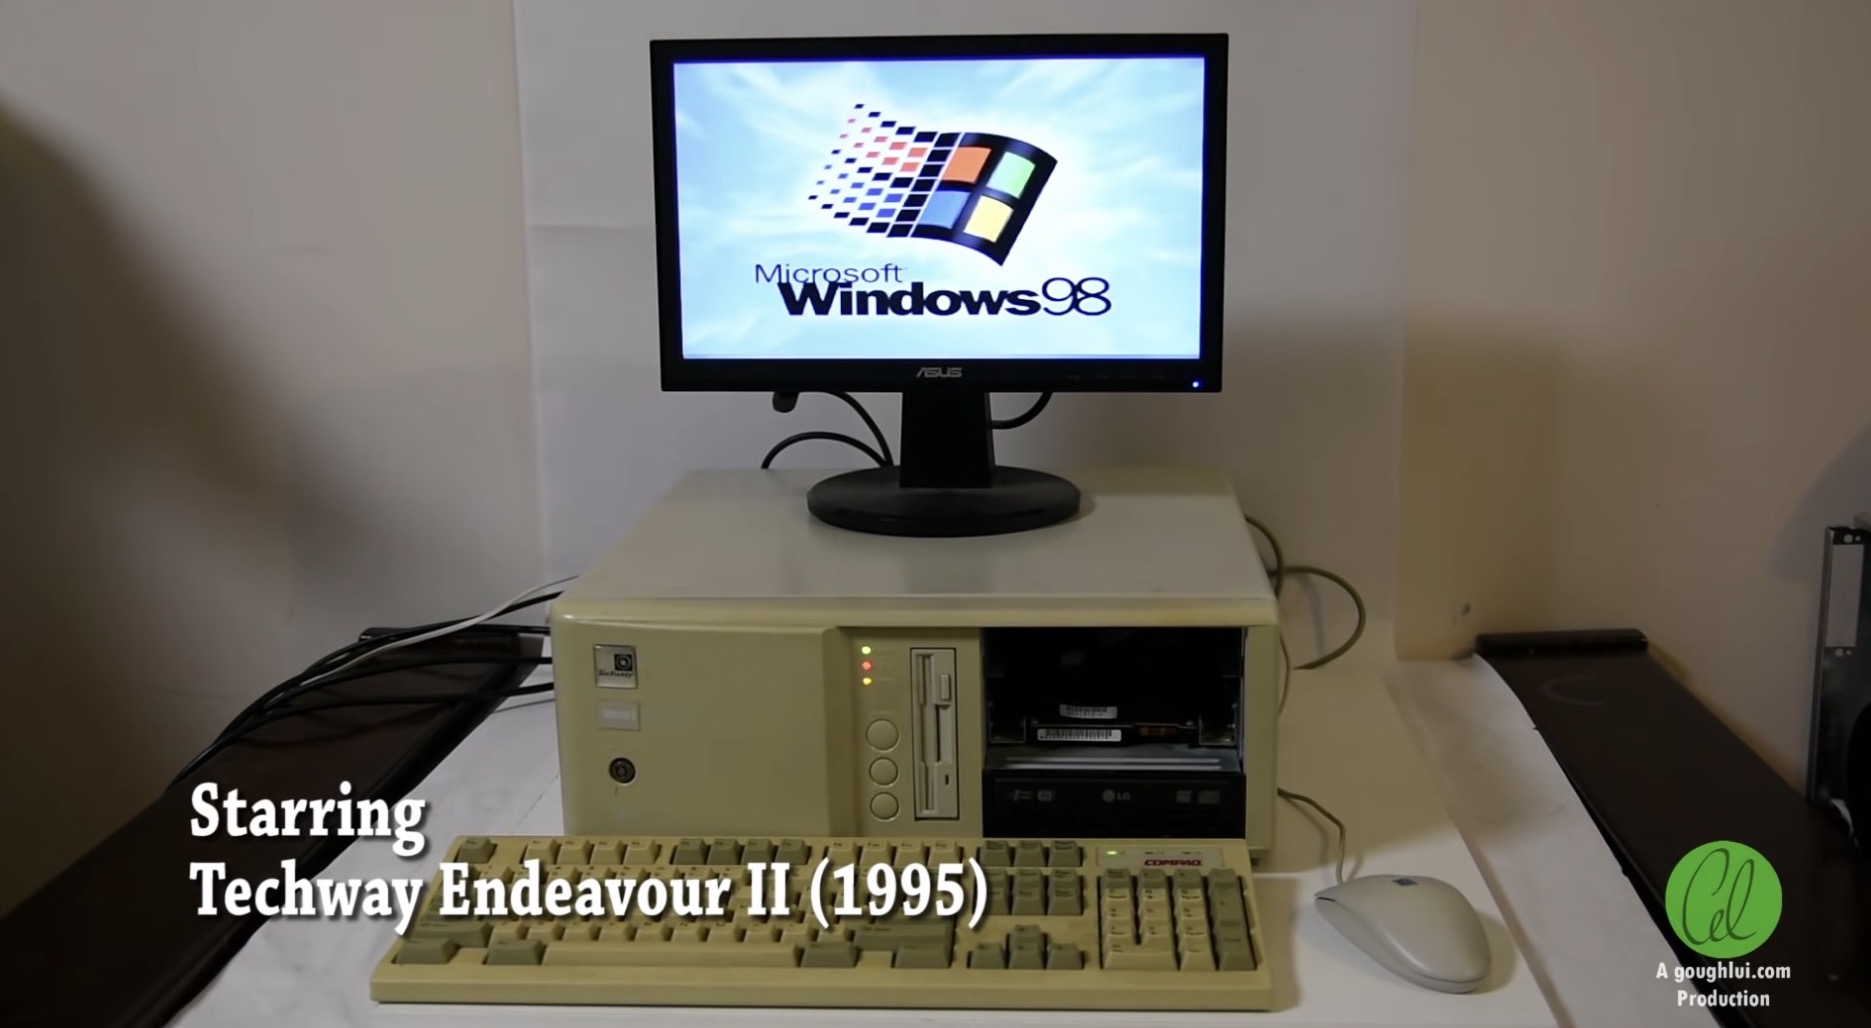 Sẽ như thế nào khi sử dụng Internet dial-up "tít tè" với máy tính Windows 98 kết nối với website hiện đại? - Ảnh 2.